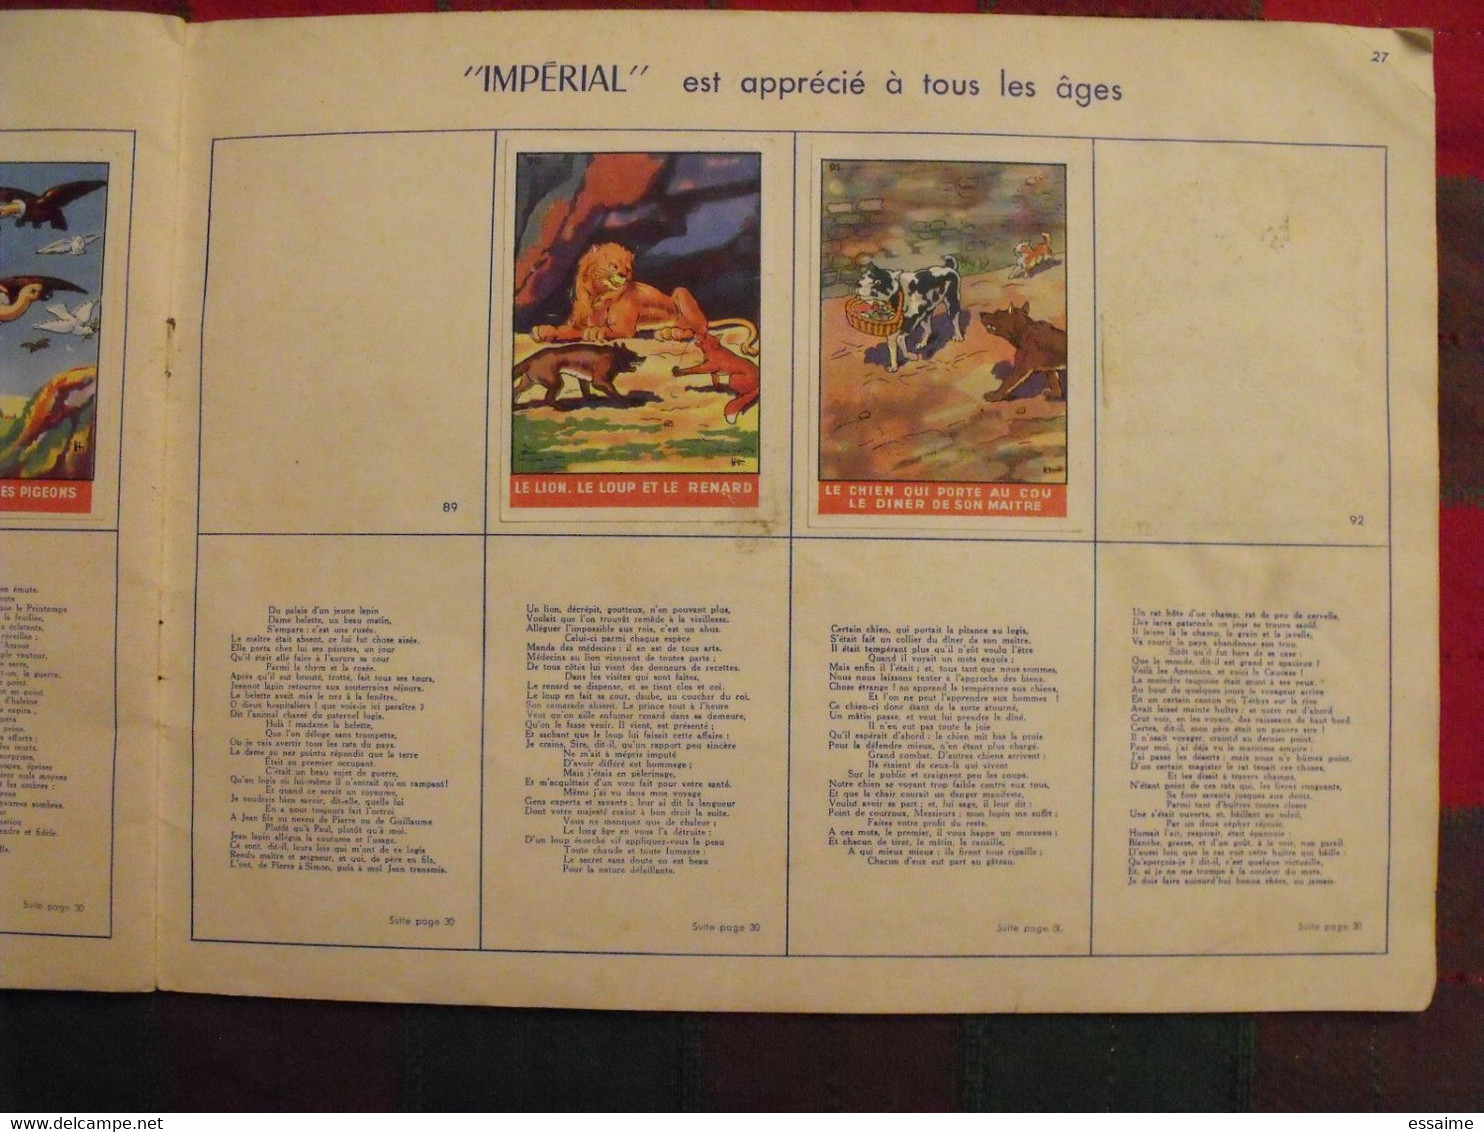 album d'images Fables de La Fontaine. flan entremets Impérial. contient 76/96 images. vers 1960. lot 5